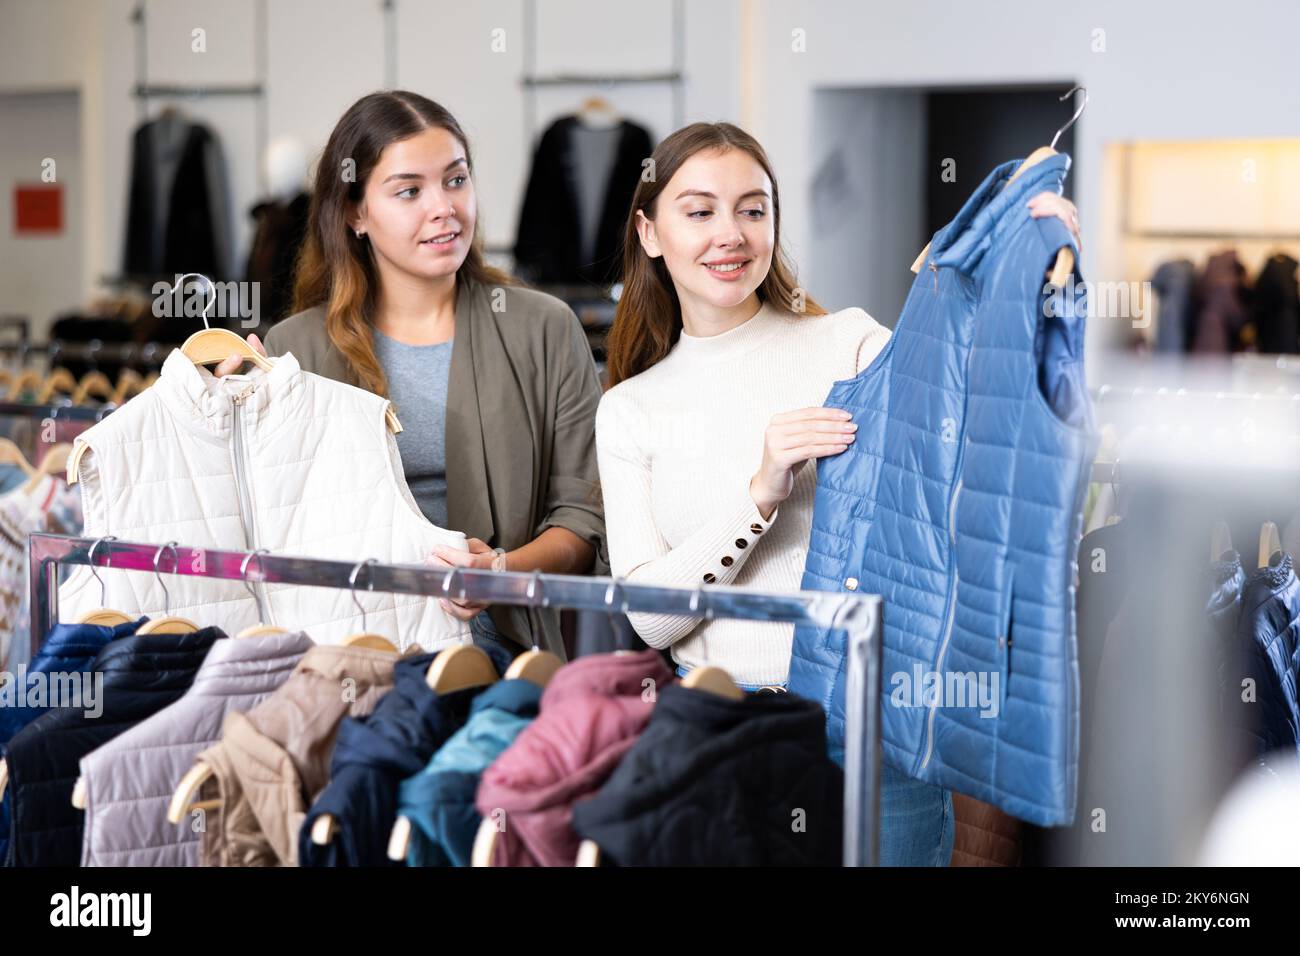 Les jeunes femmes joyeuses choisissent entre les gilets blancs et bleus  dans un magasin de vêtements Photo Stock - Alamy